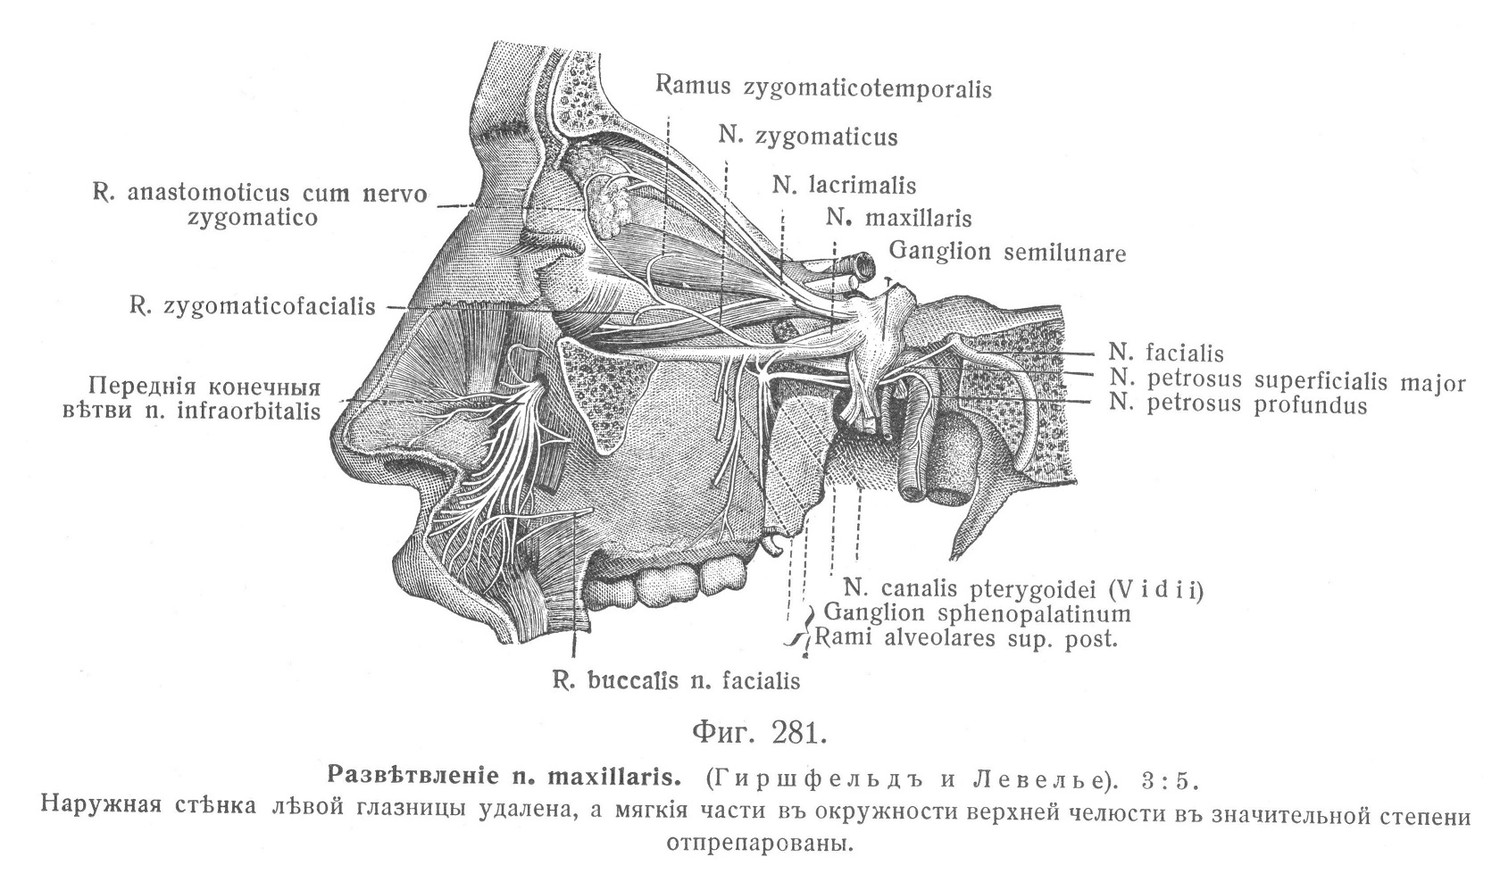 Развѣтвленіе п. maxillaris. 